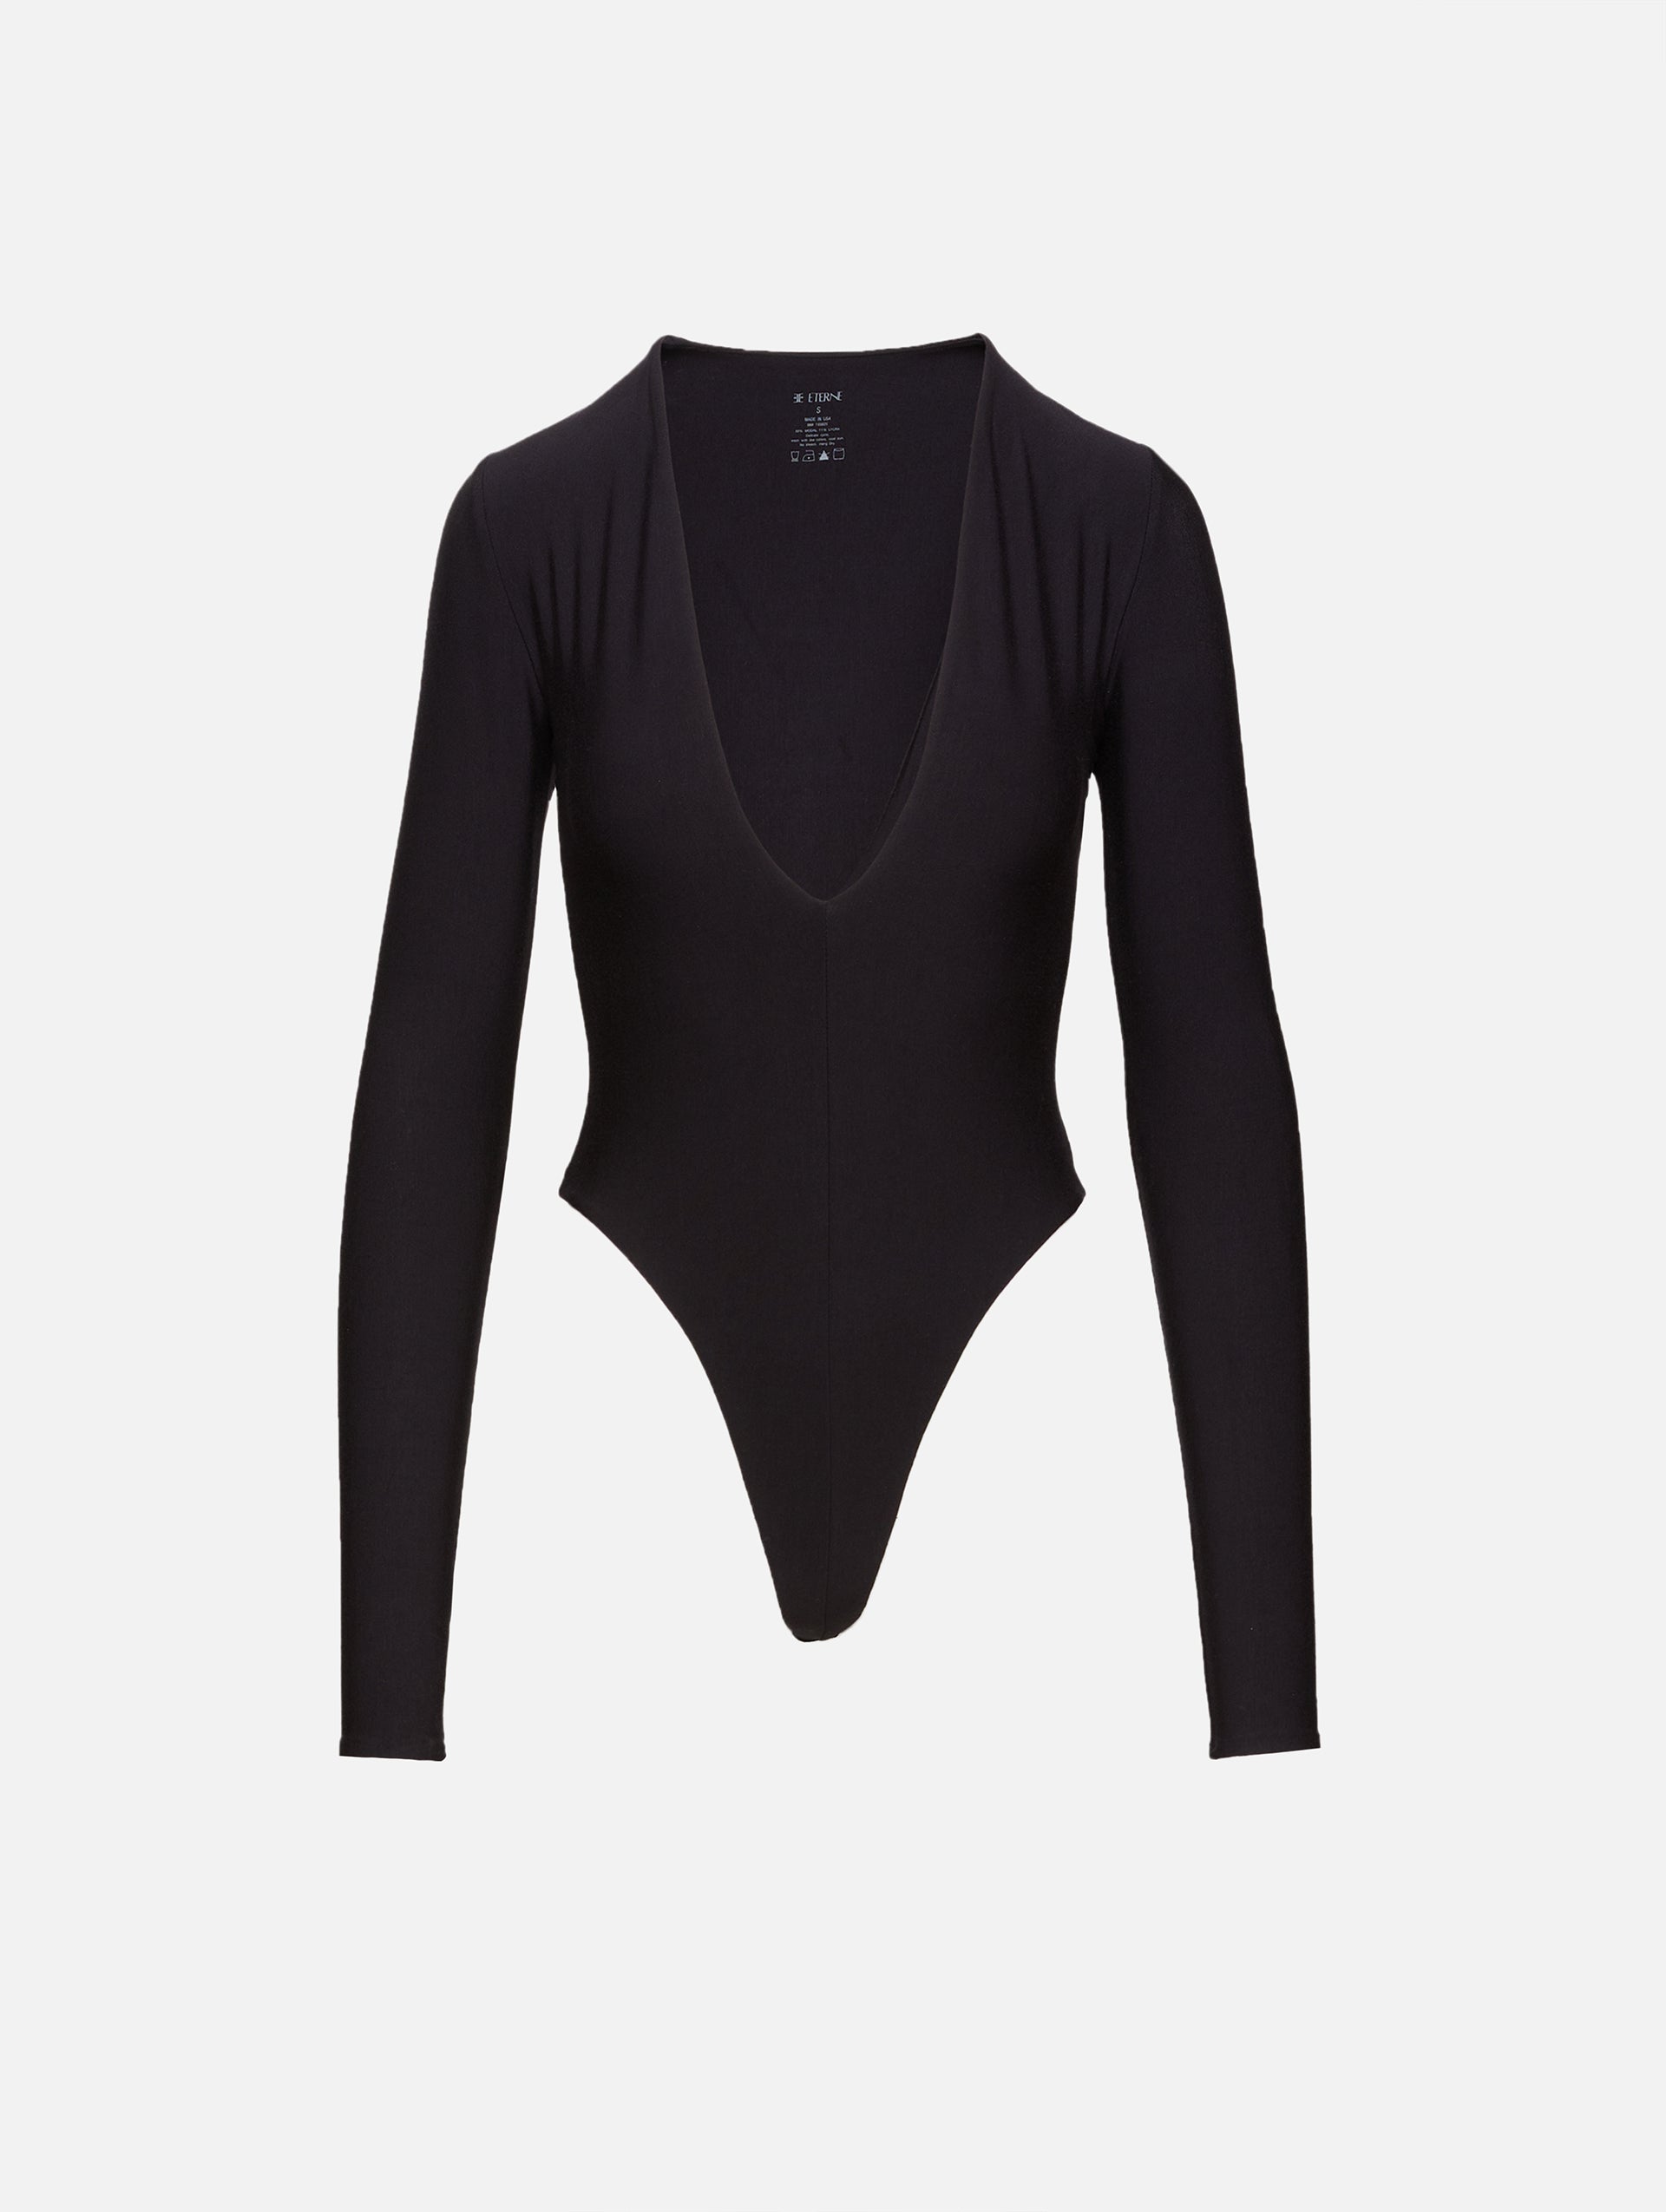  Long Sleeve Bodysuit for Women, Black T Shirts Deep V